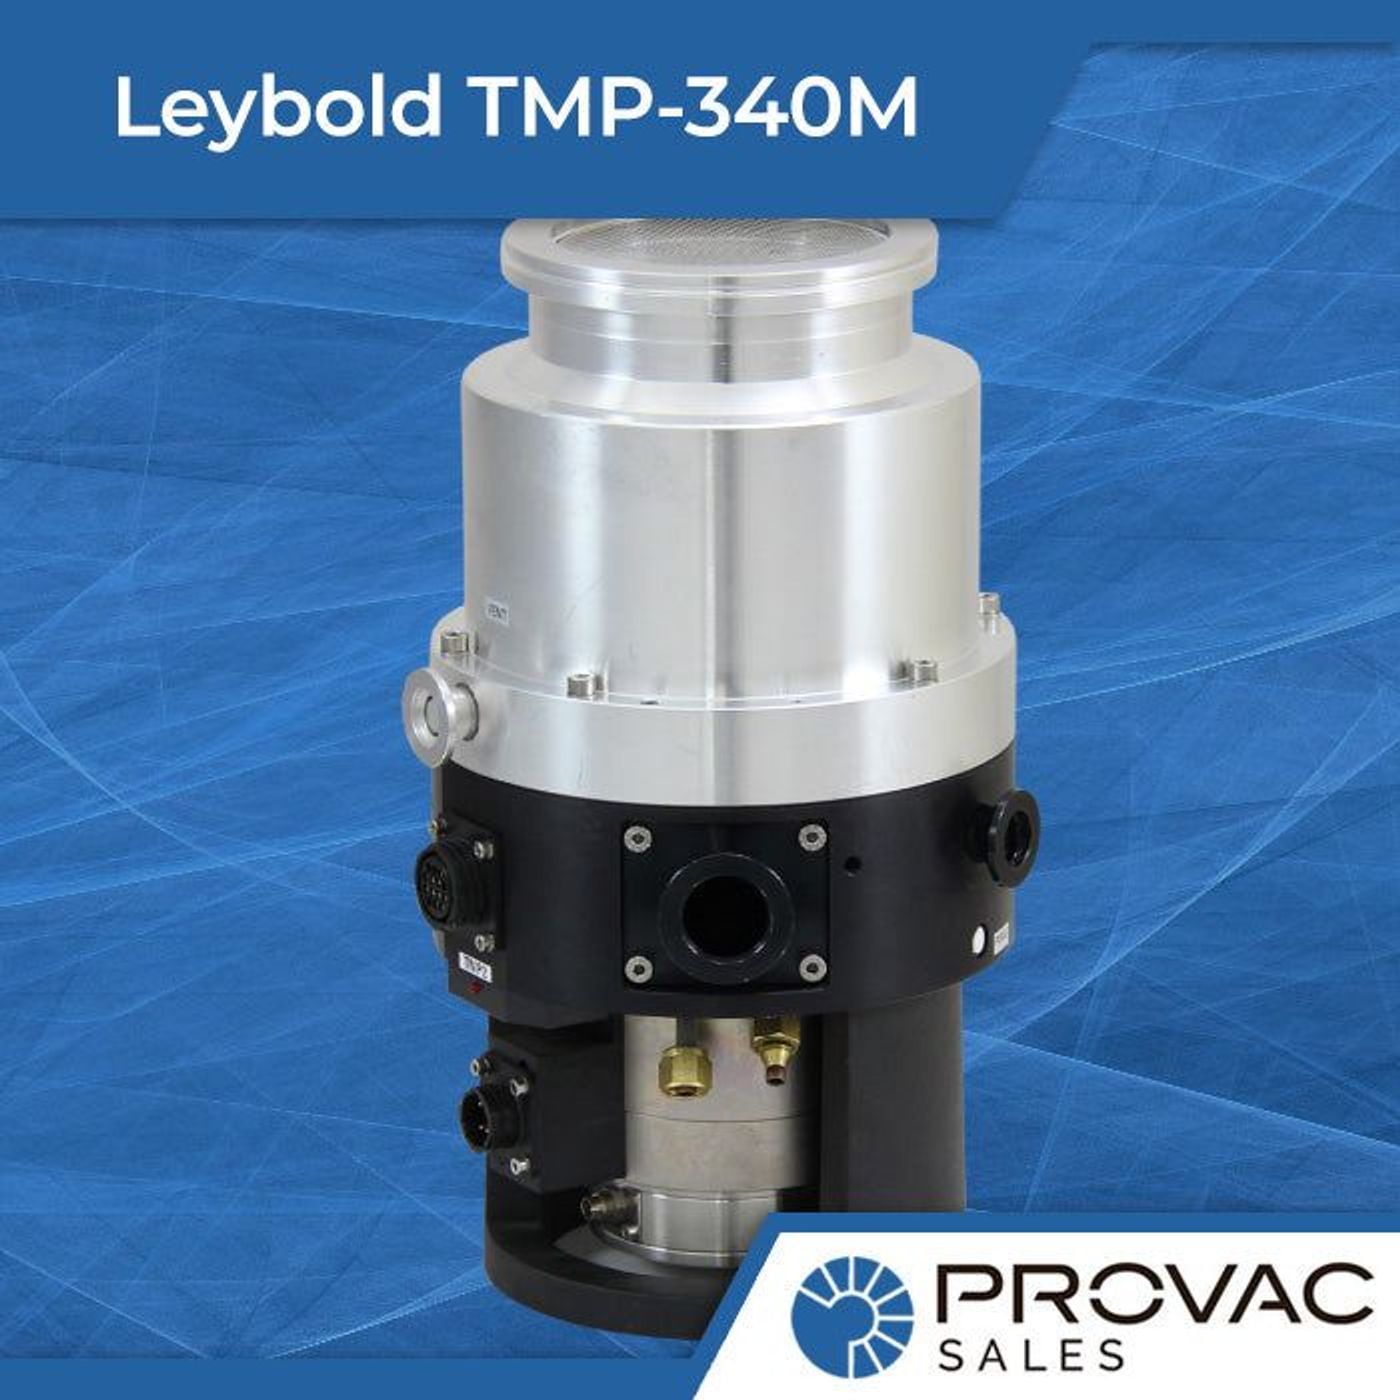 Leybold TMP-340M Turbomolecular Pump